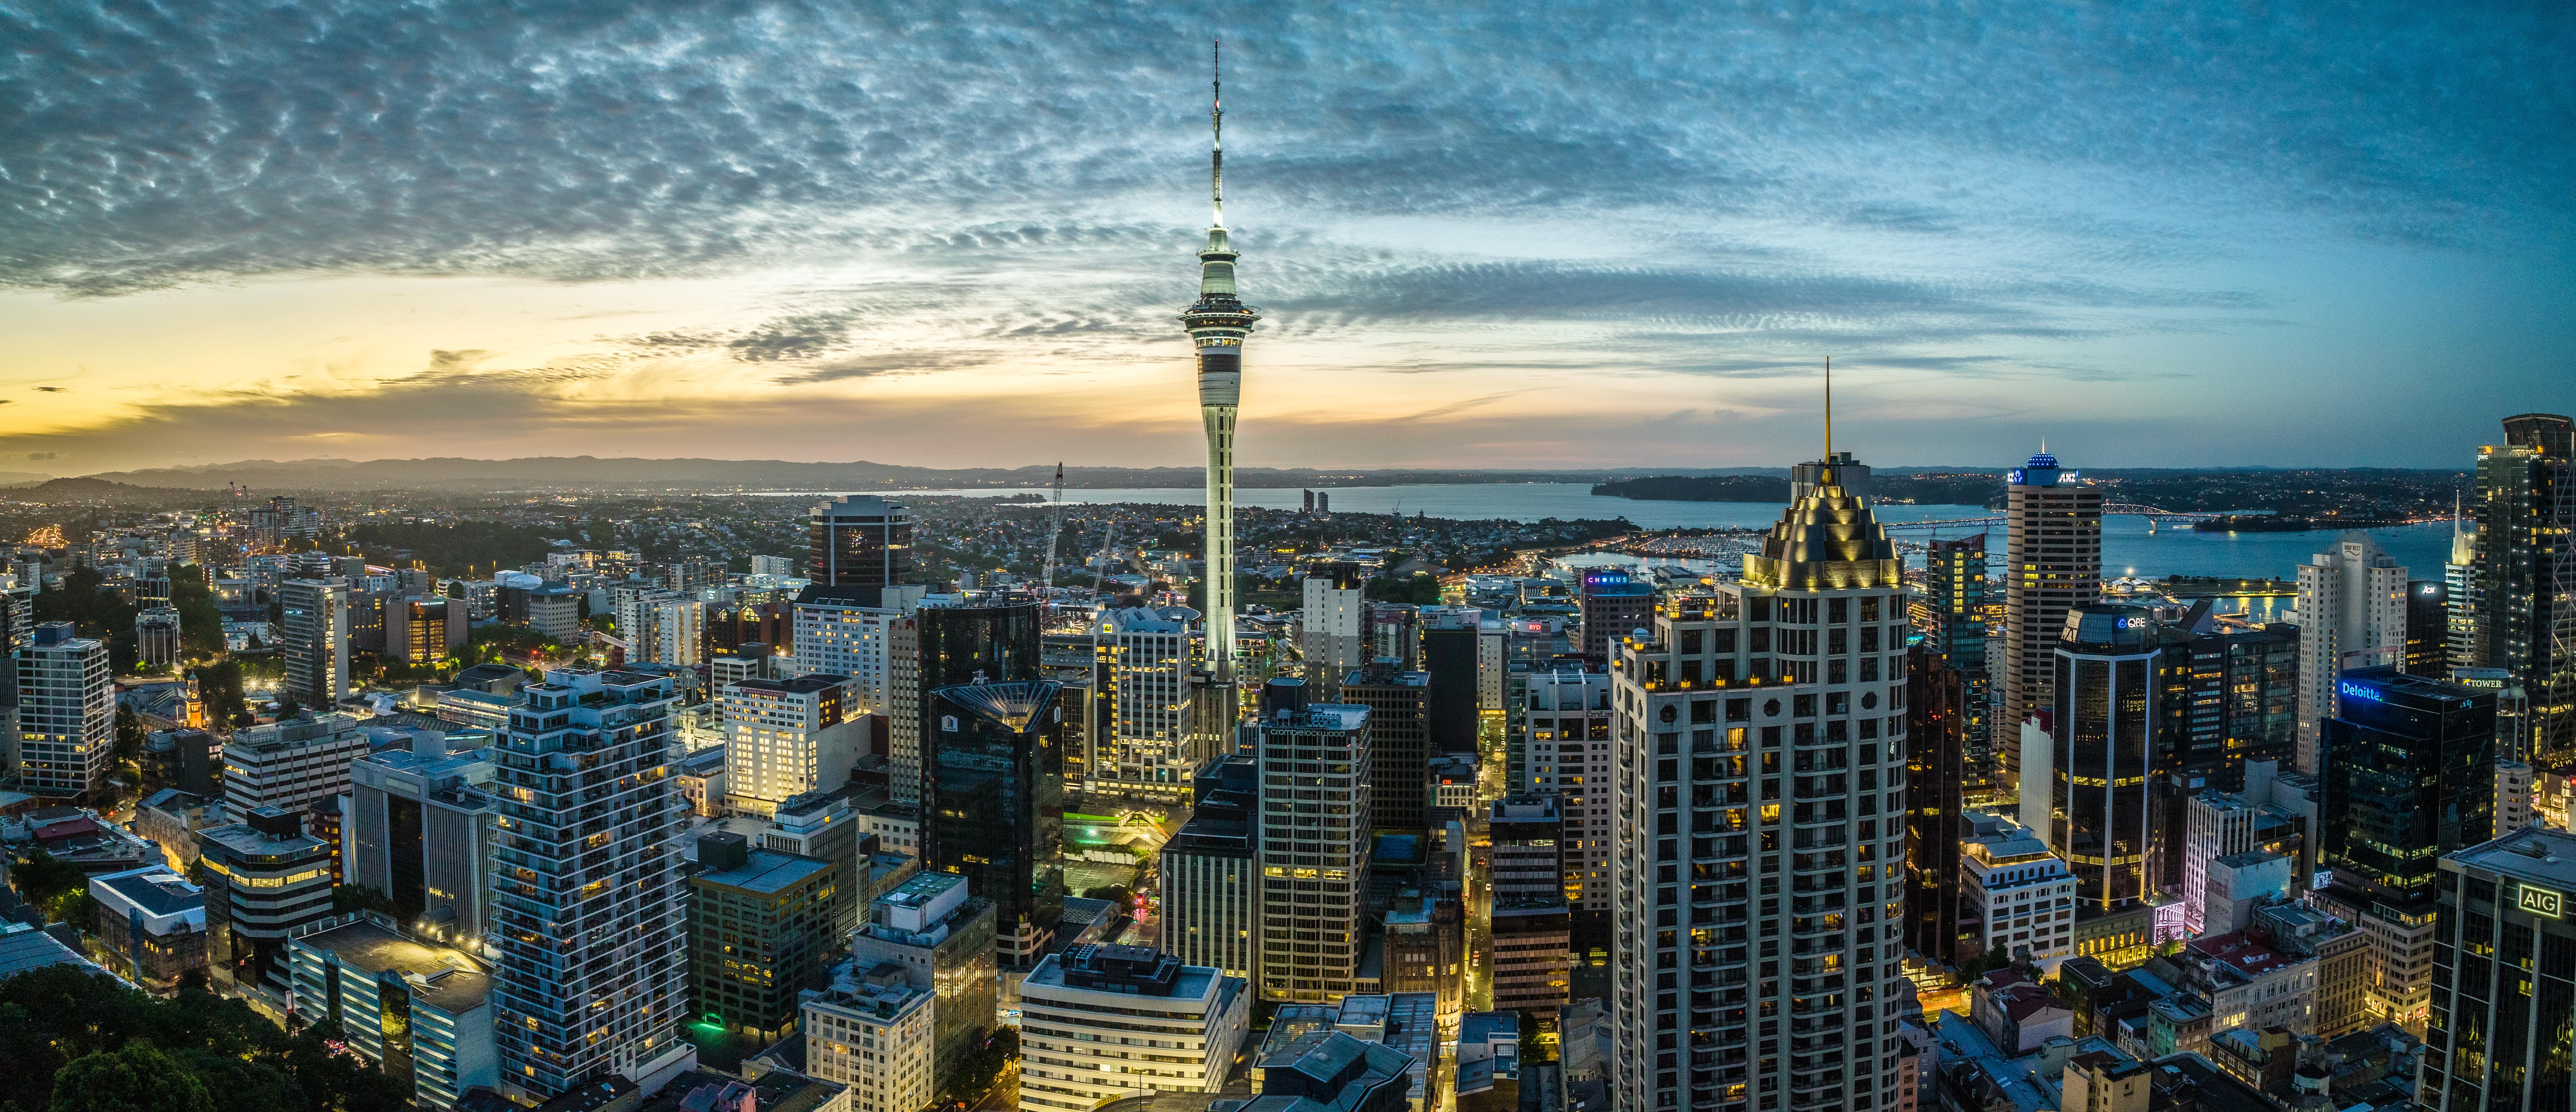 Auckland CIty, New Zealand skyline